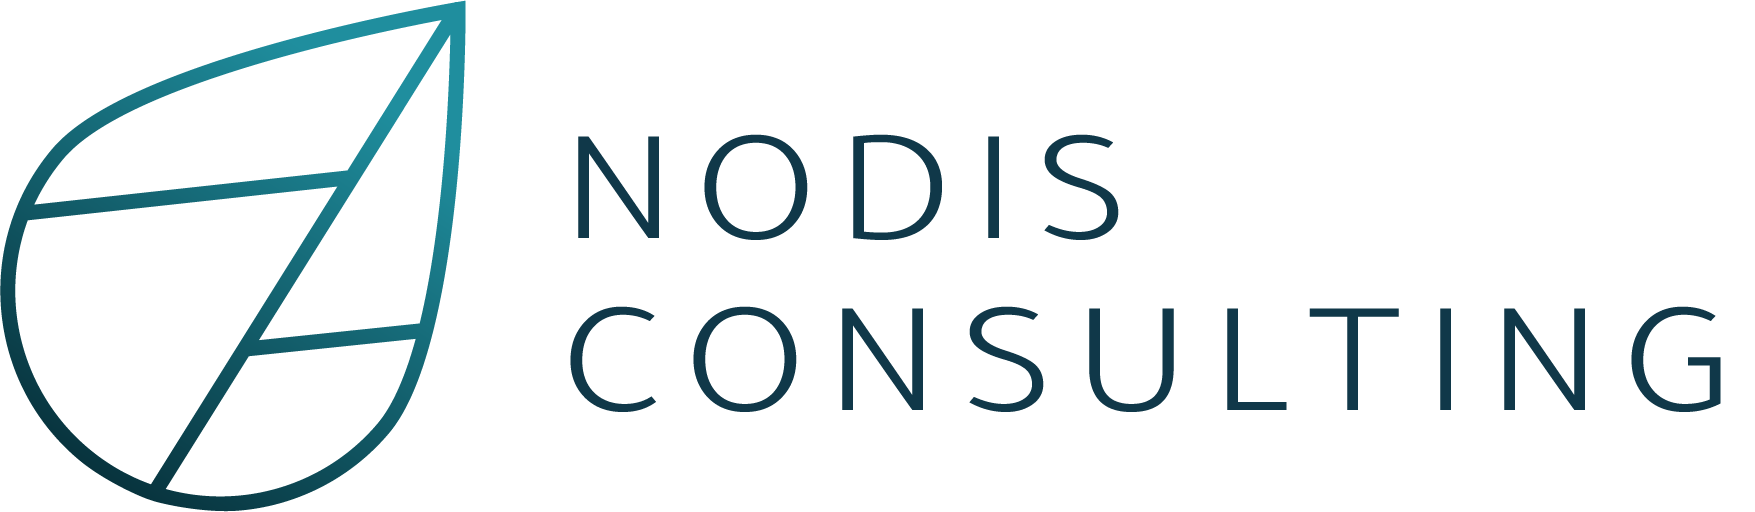 Nodis Consulting